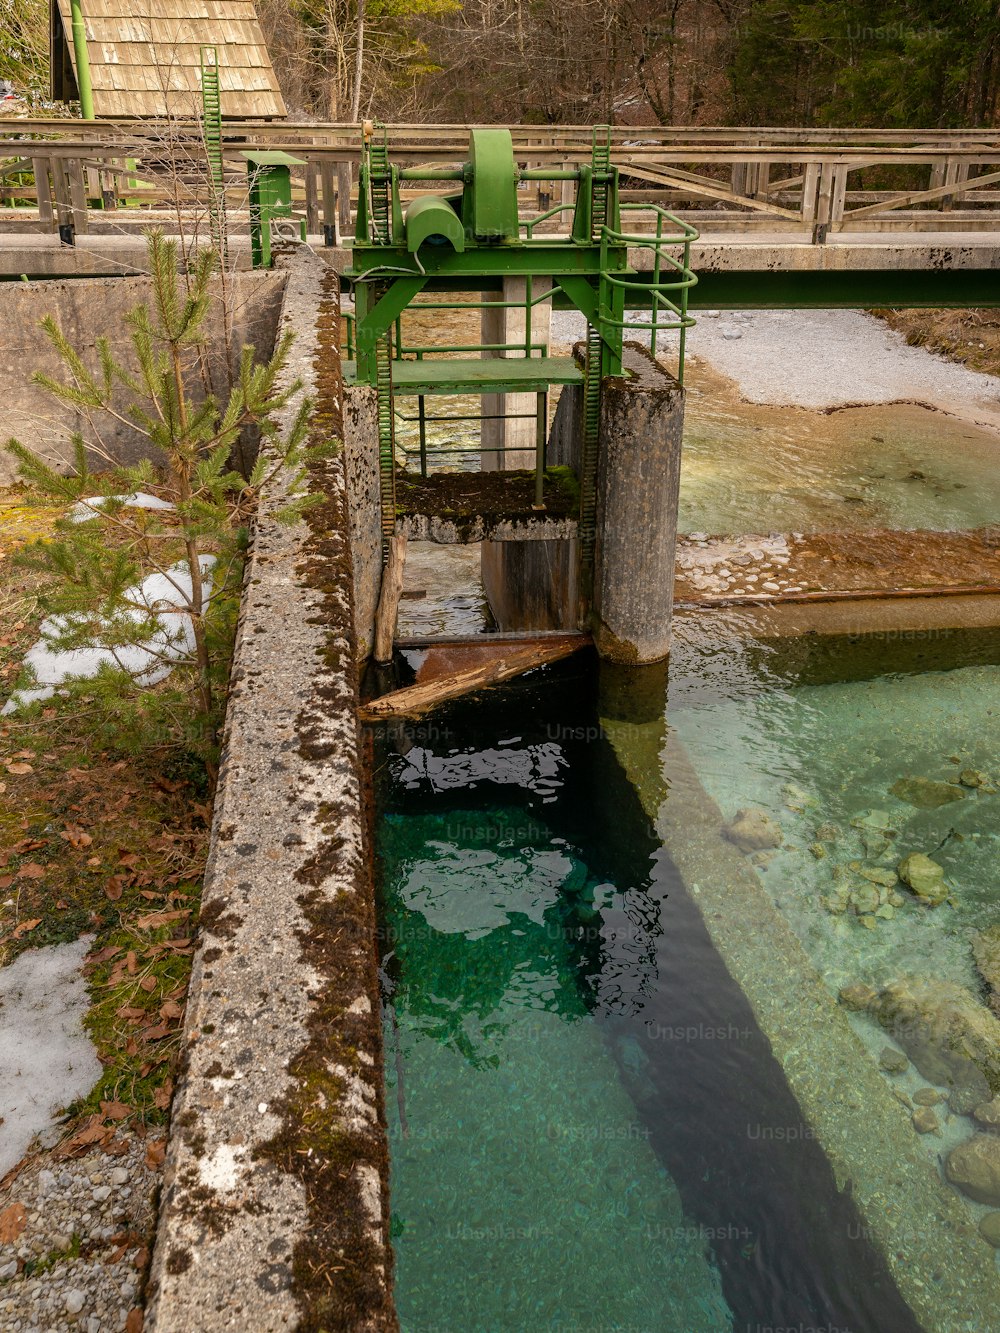 Una máquina verde está en medio de un cuerpo de agua